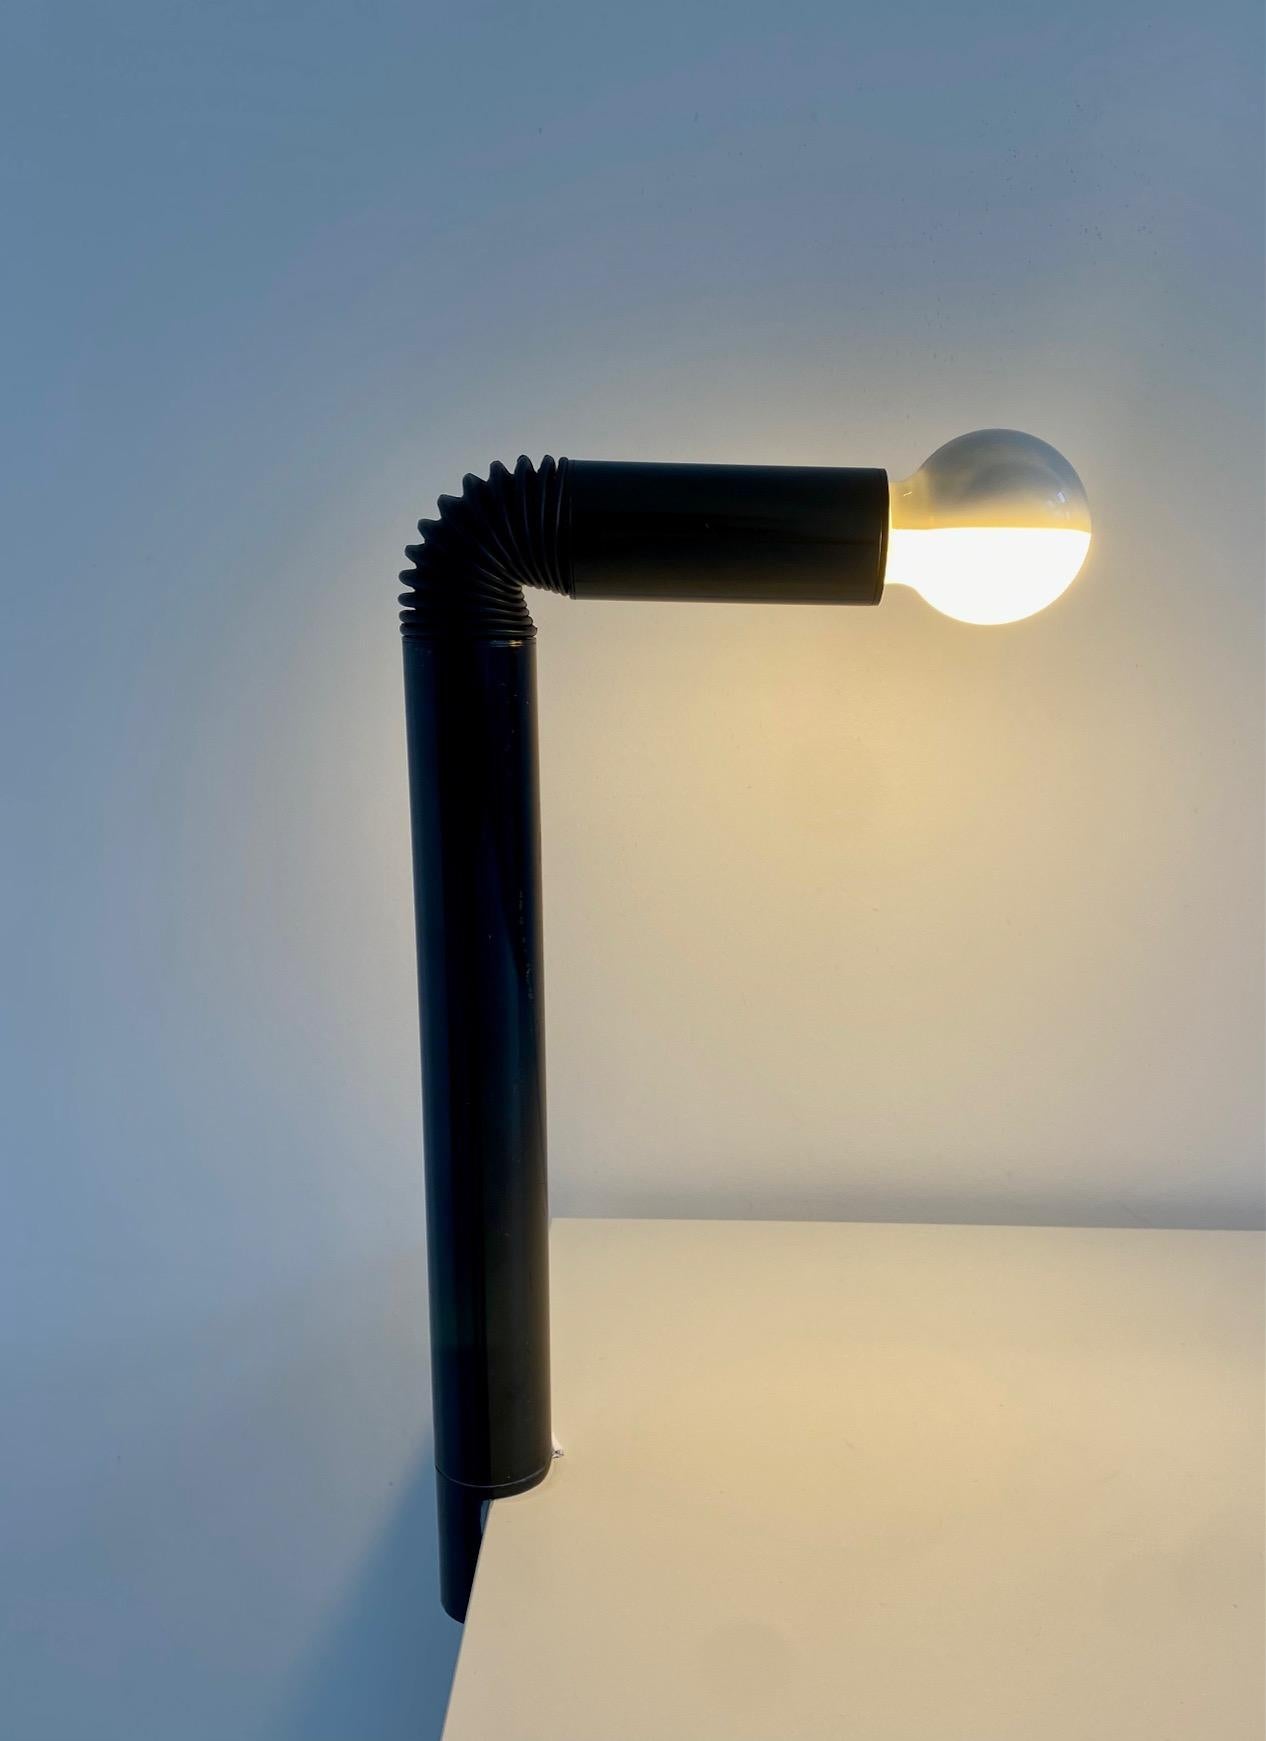 Periscopio table lamp with clamp by Danilo and Corrado Aroldi for Stilnovo, 1967.

As described in Stillovo Catalogue No. 30: 